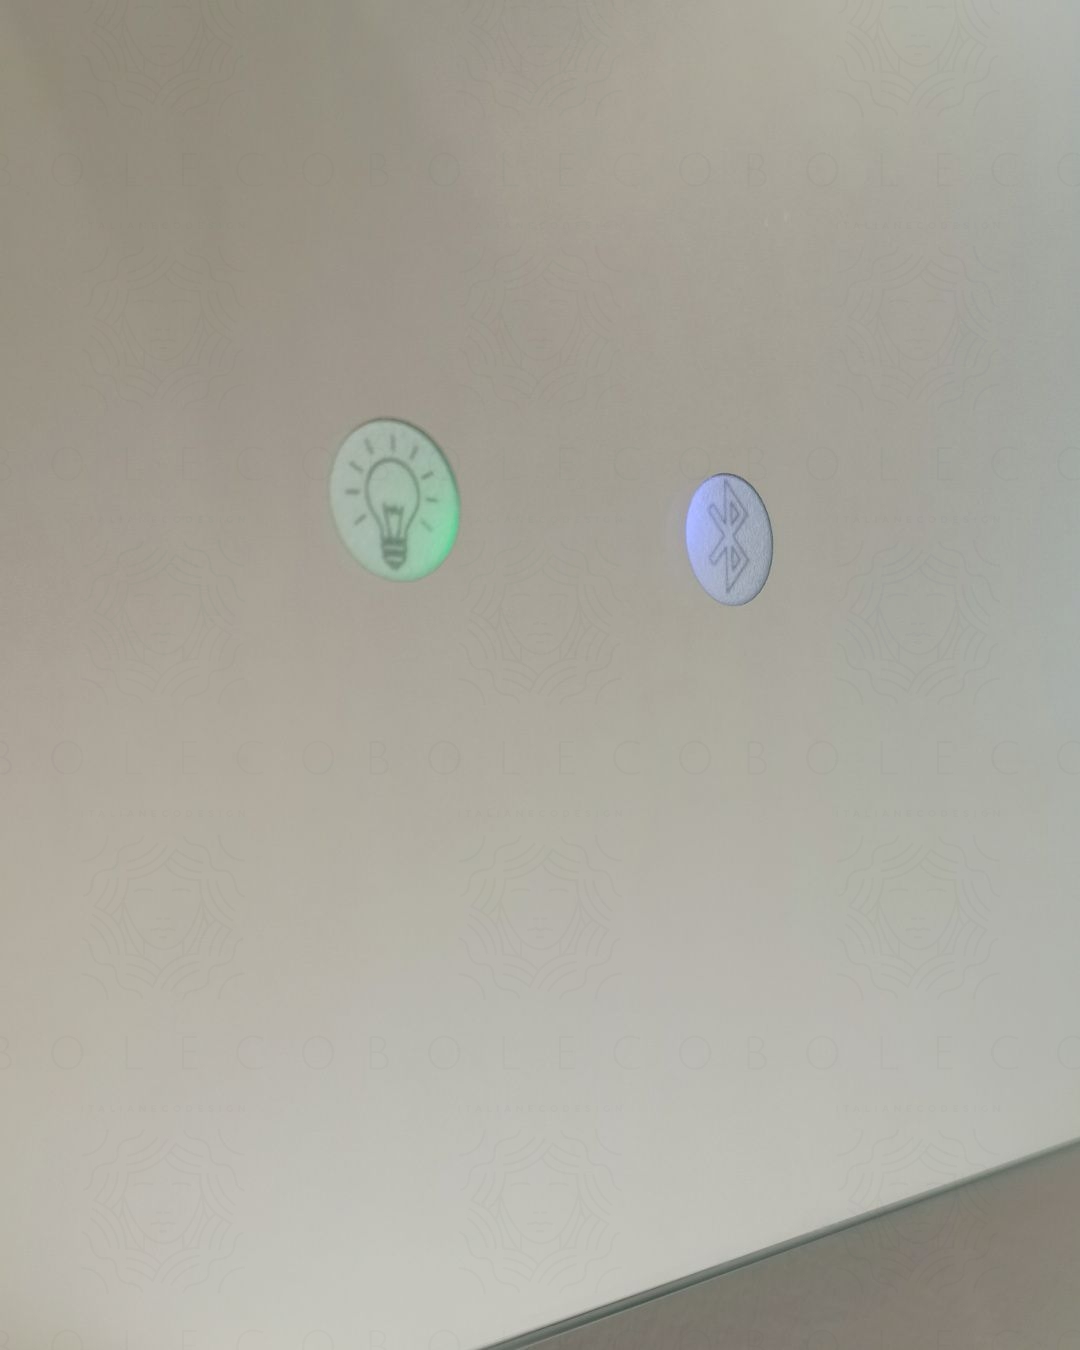 Specchio led con sensore touch e bluetooth, cm.100x100